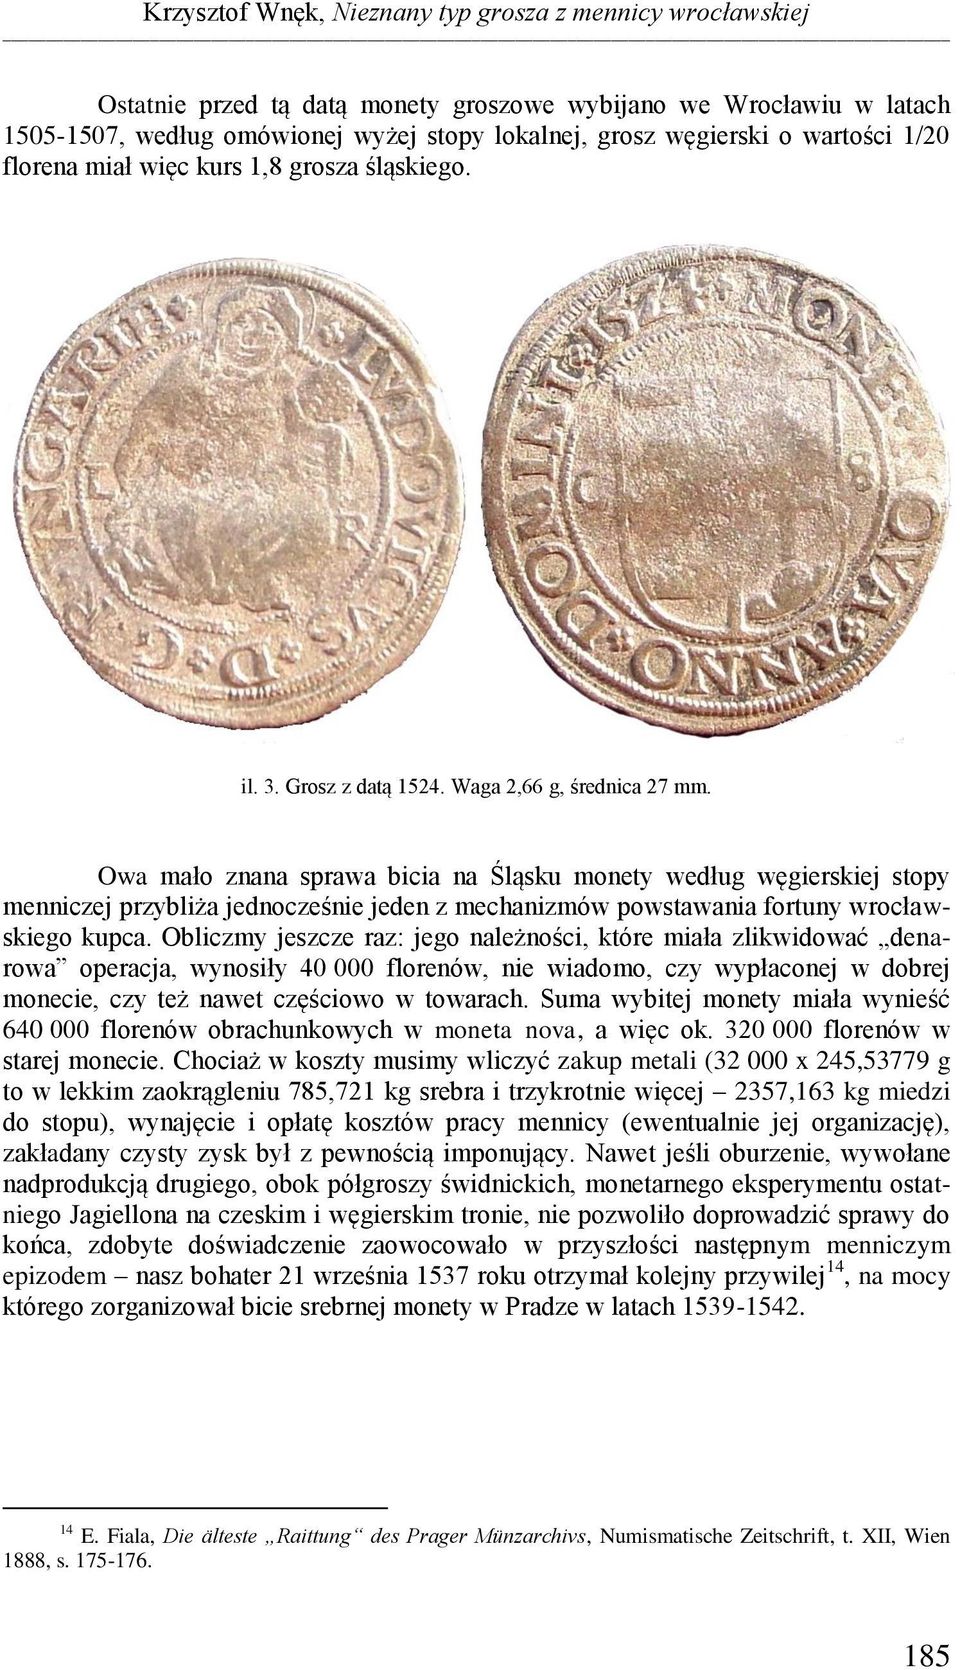 Owa mało znana sprawa bicia na Śląsku monety według węgierskiej stopy menniczej przybliża jednocześnie jeden z mechanizmów powstawania fortuny wrocławskiego kupca.